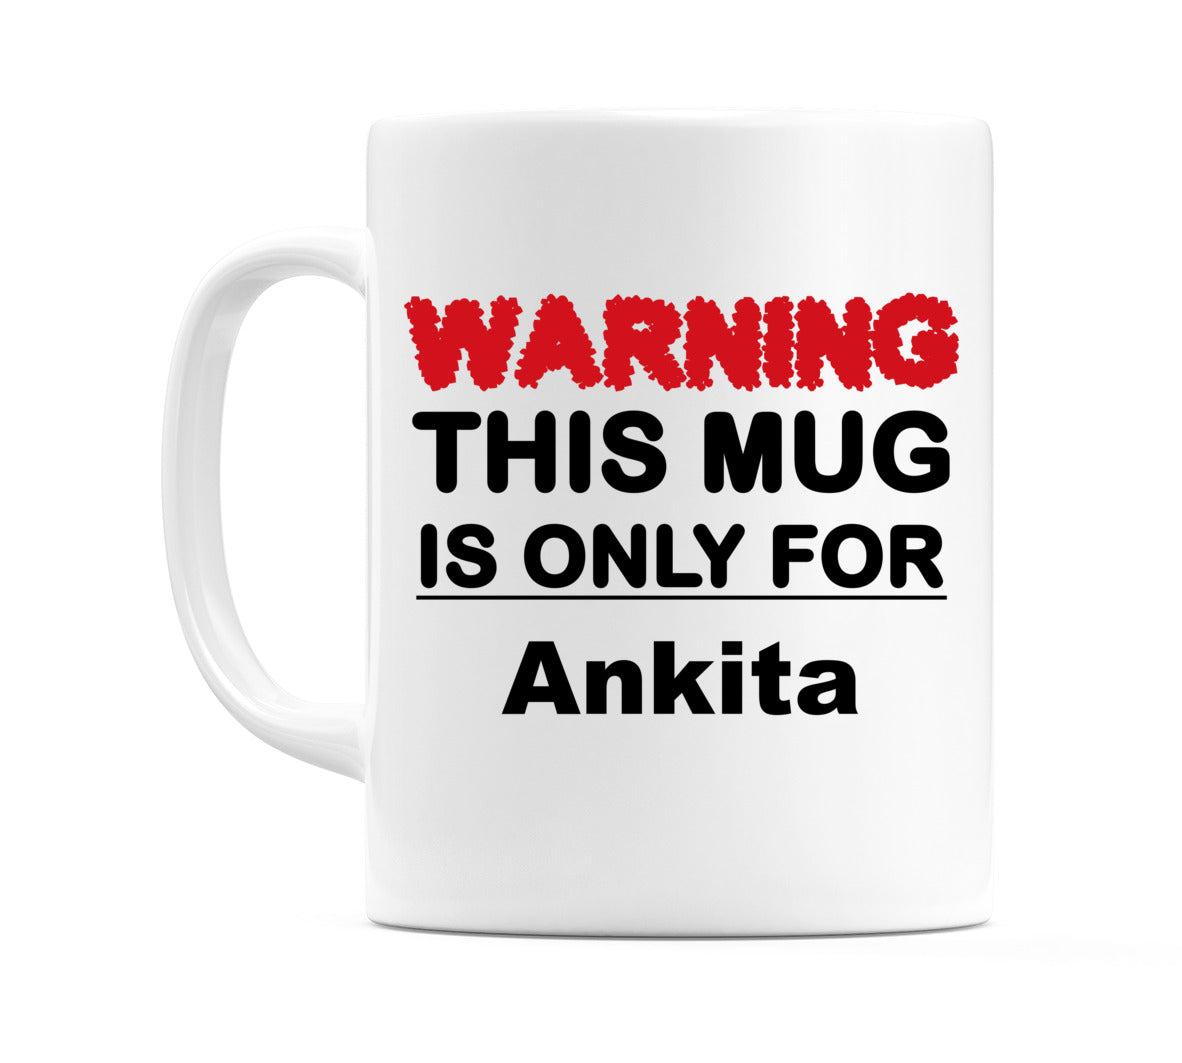 Warning This Mug is ONLY for Ankita Mug